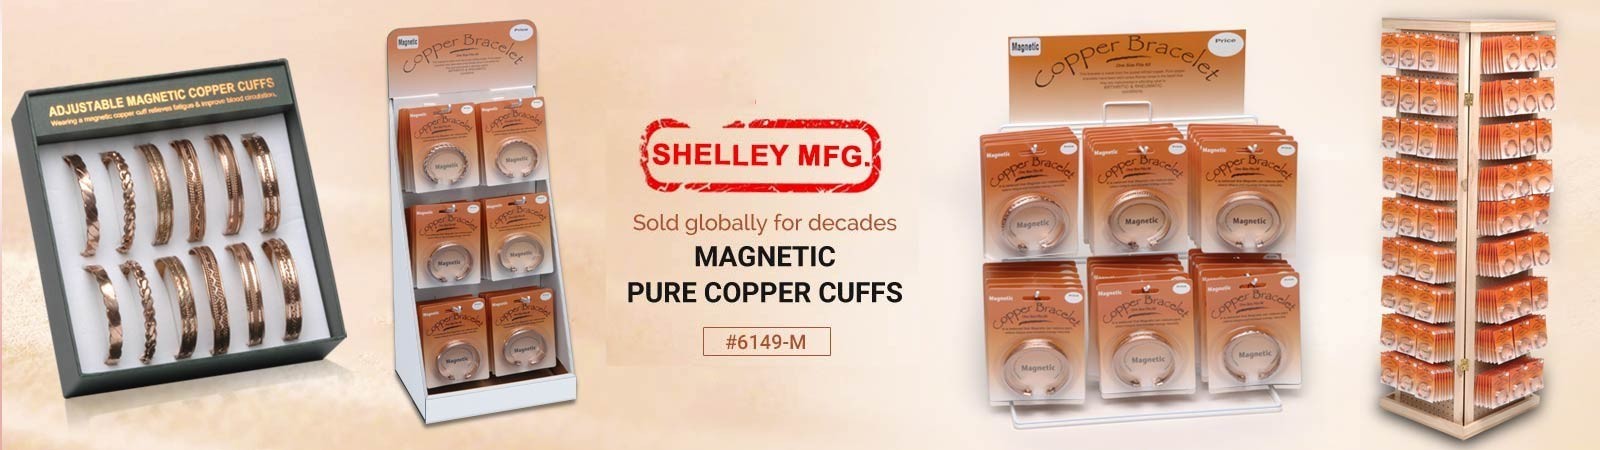 magnetic-pure-copper-cuffs-6149-m